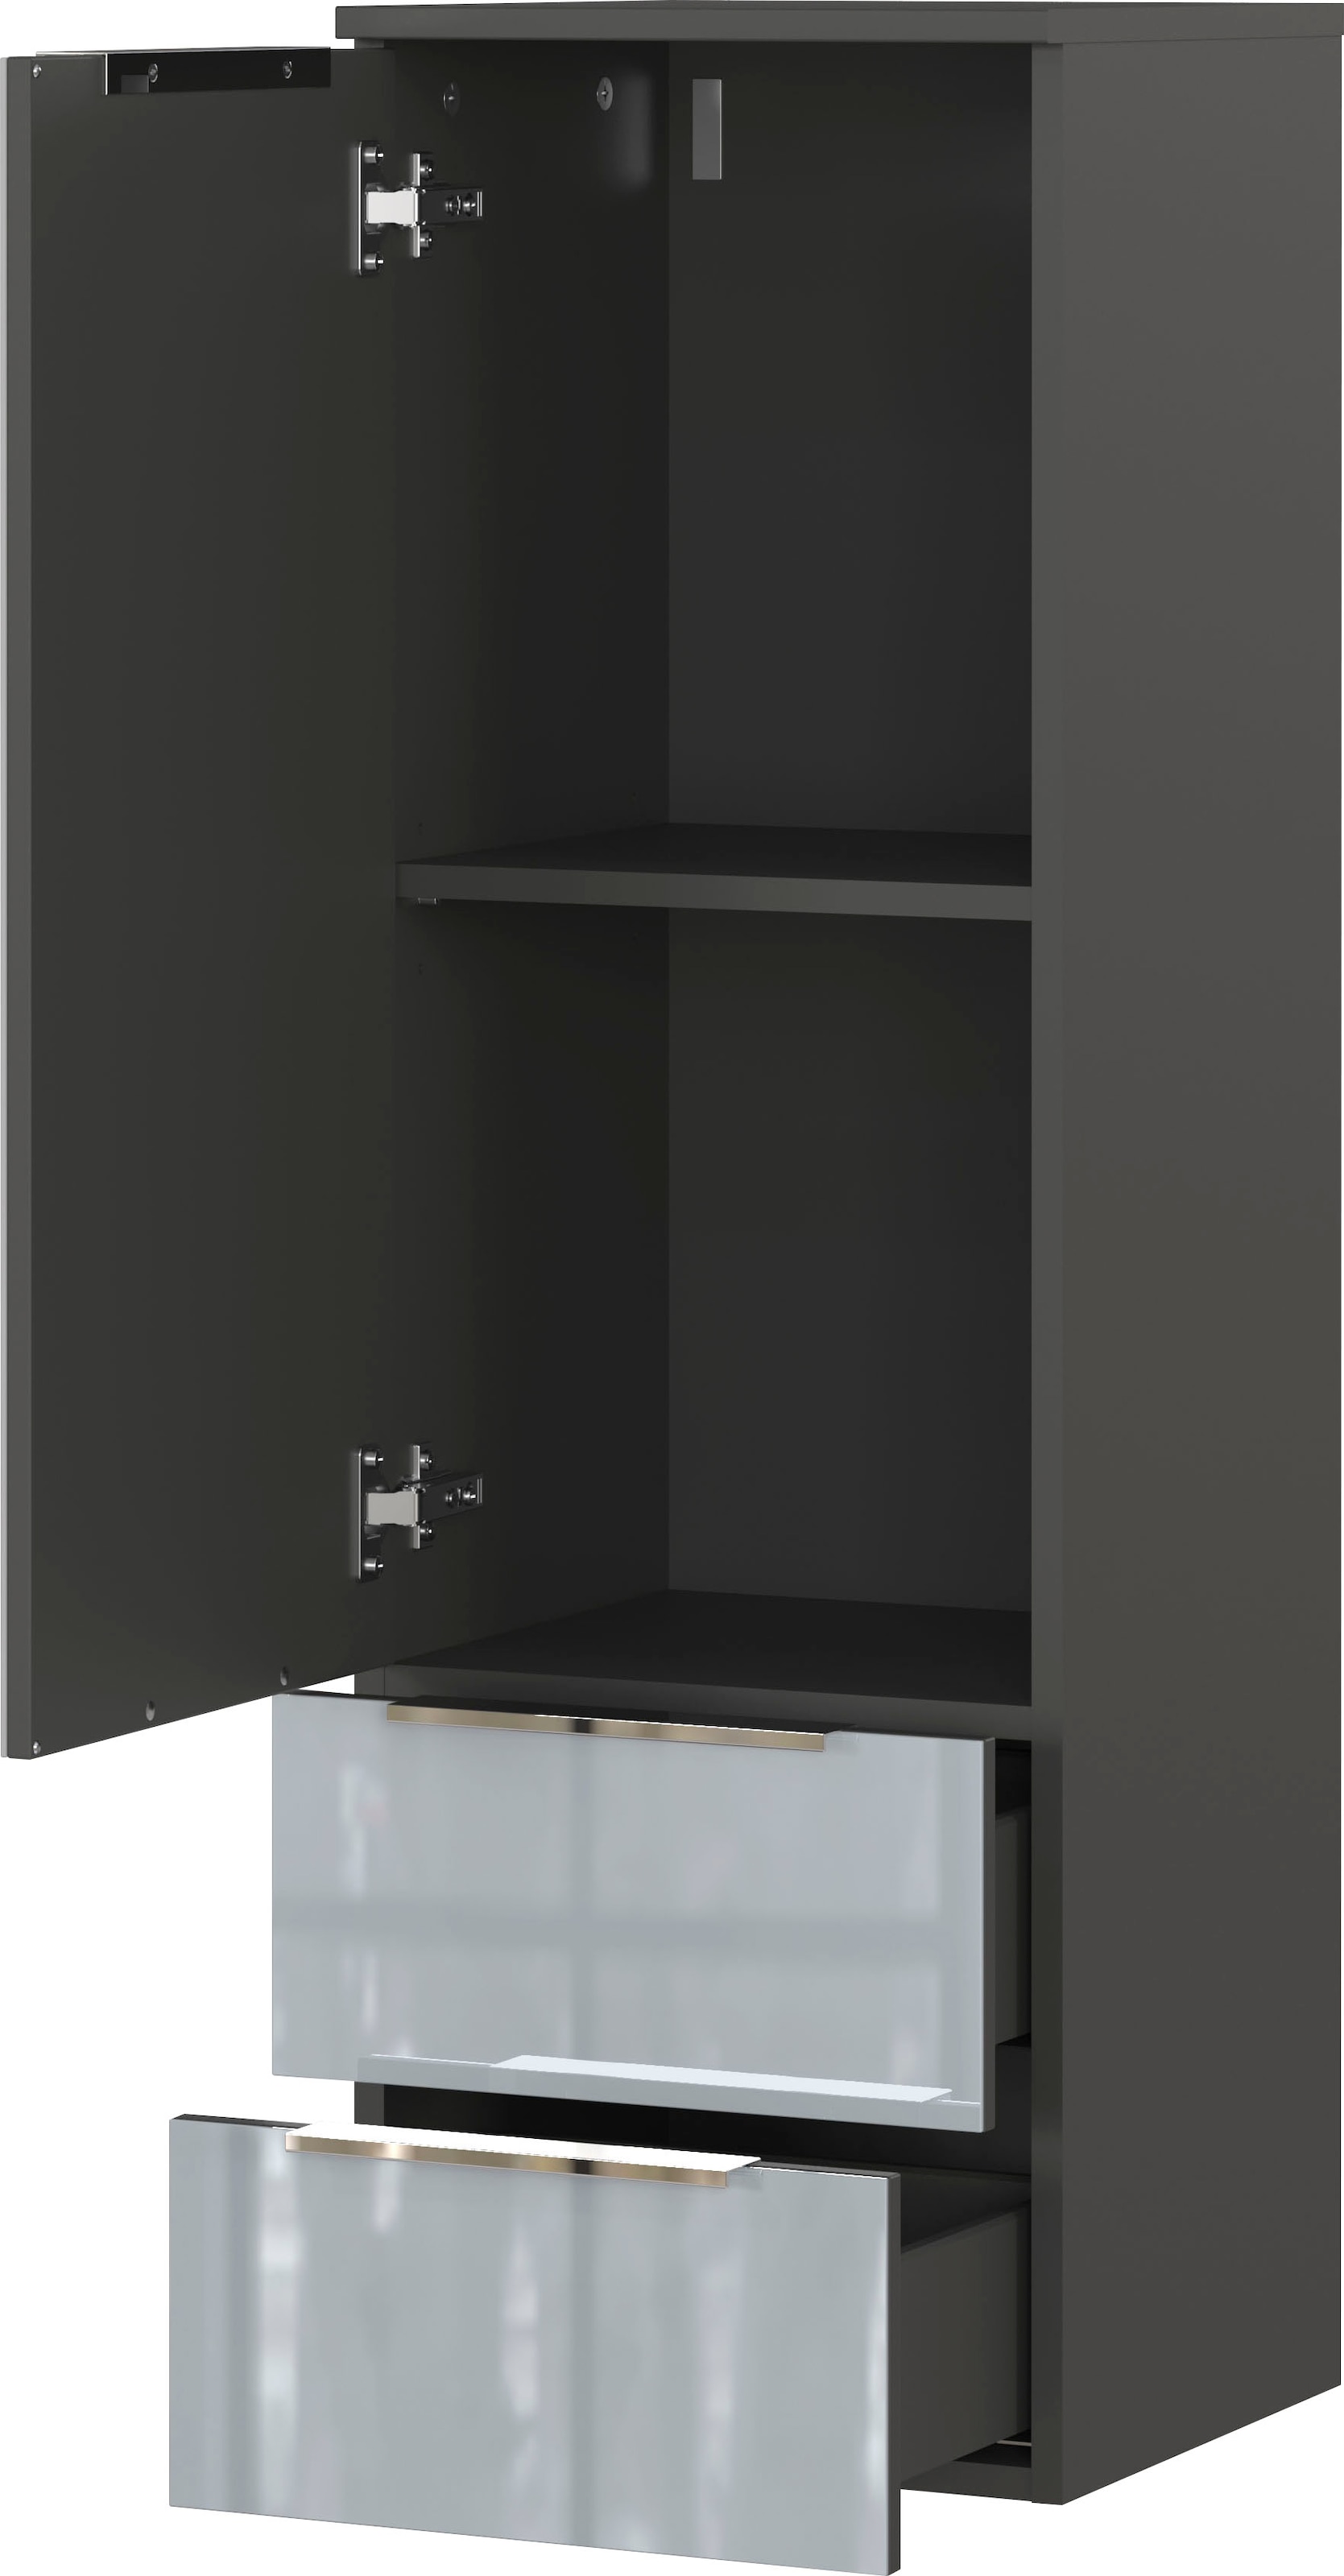 GERMANIA Midischrank »Vasio«, Schrank mit 2 Schubladen, einer Tür und verstellbarem Einlegeboden